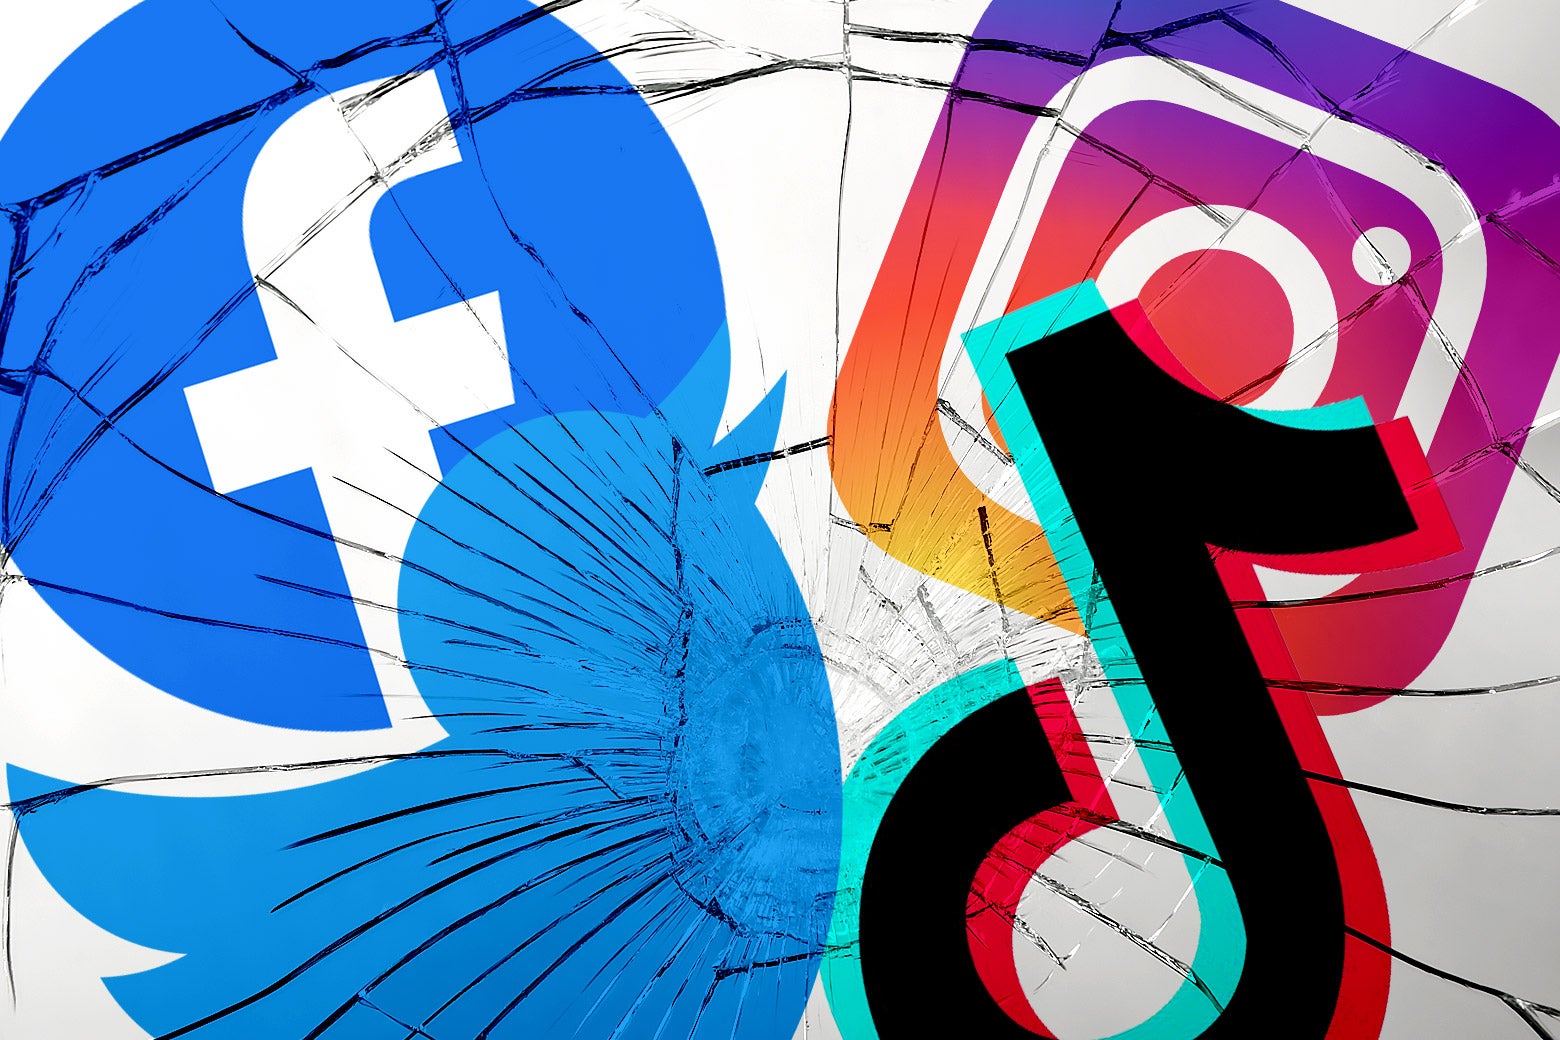 Logos for Facebook, Twitter, TikTok, and Instagram, shattered like glass.